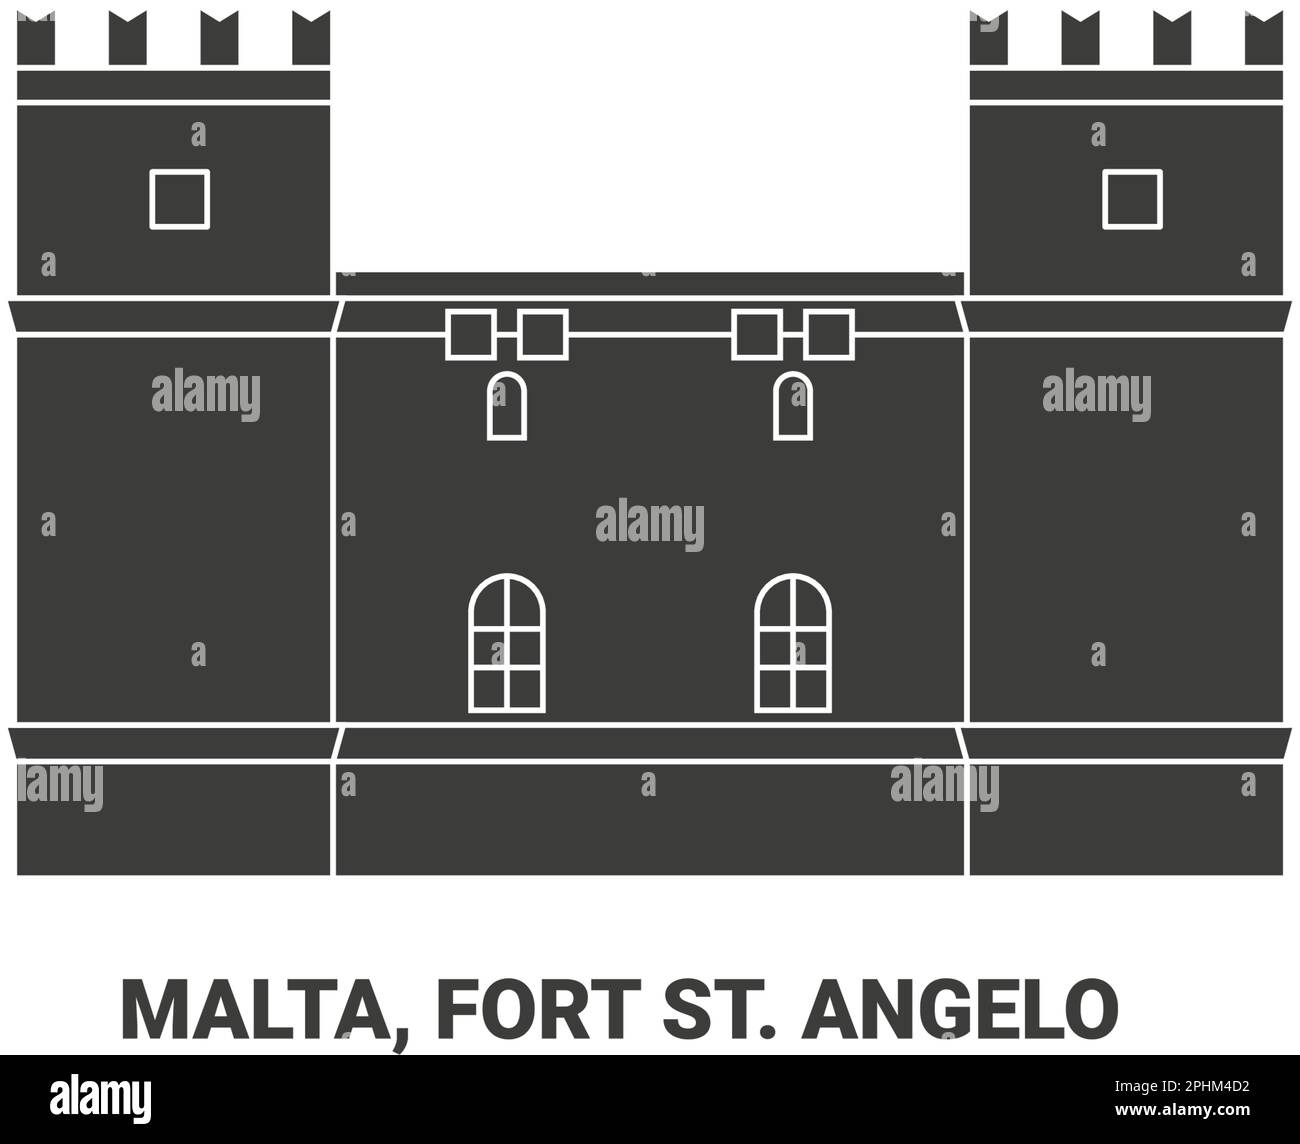 Malta, Fort St. Angelo, travel landmark vector illustration Stock Vector